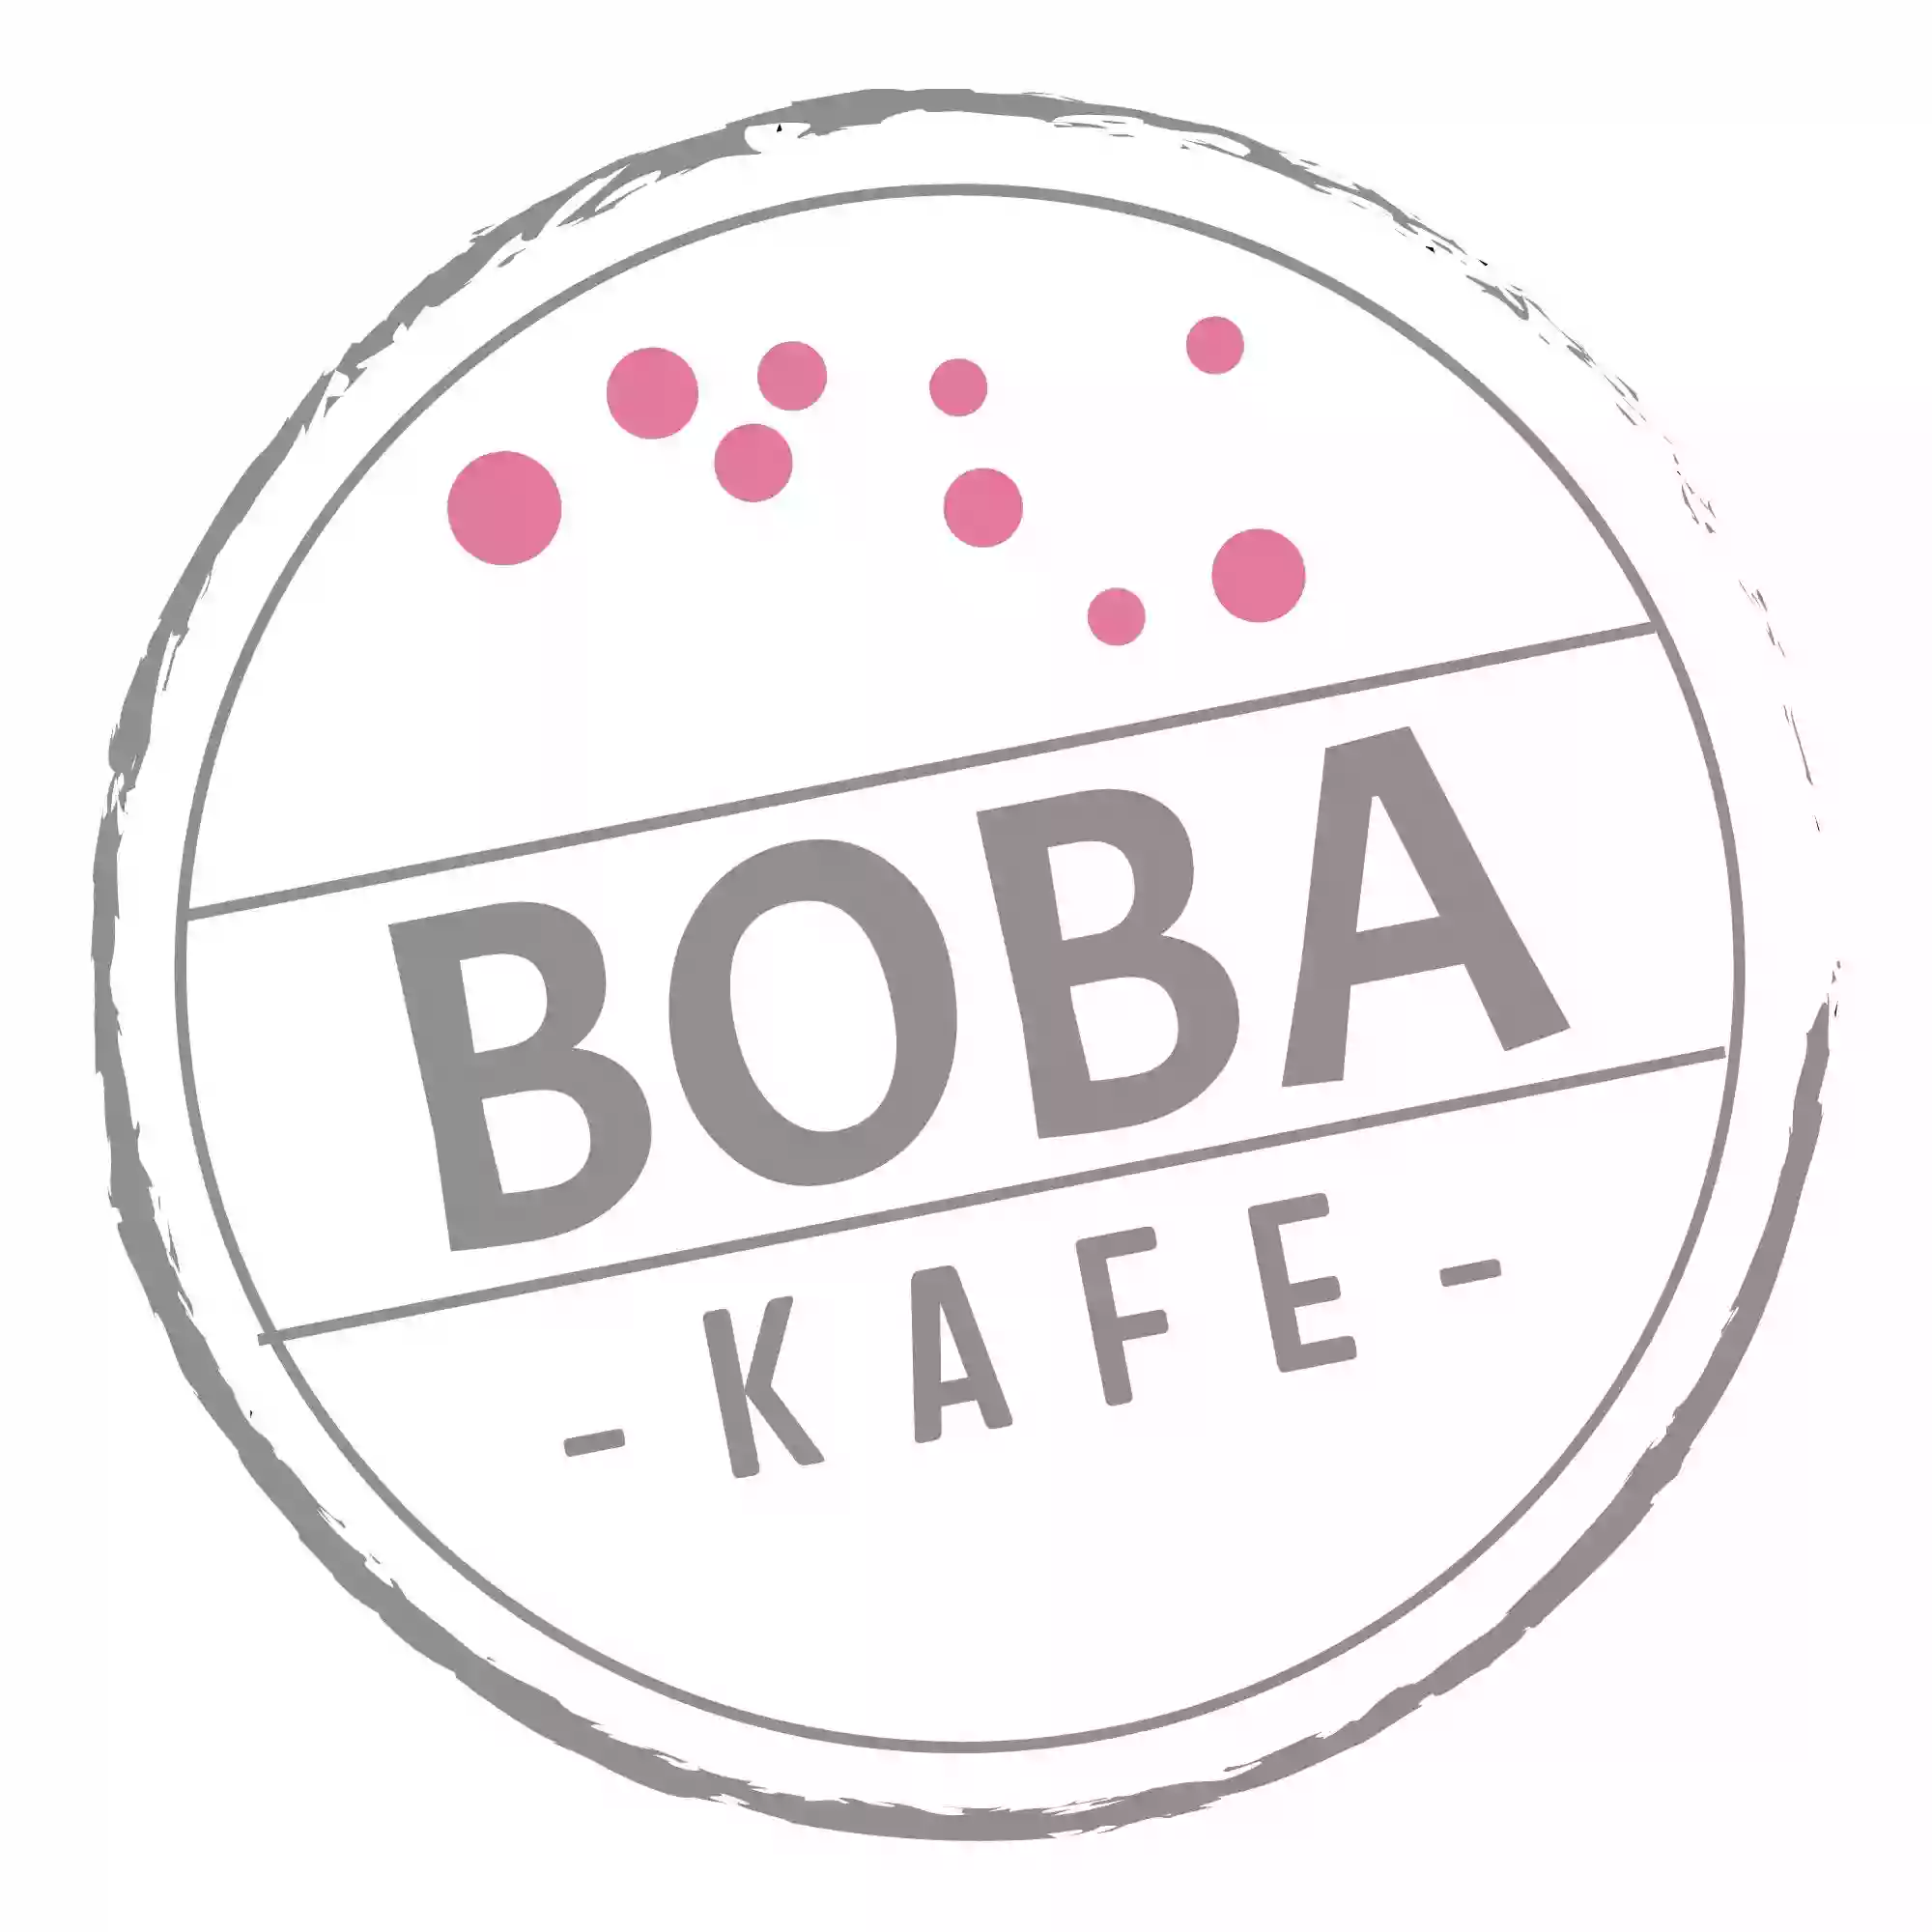 Boba Kafe